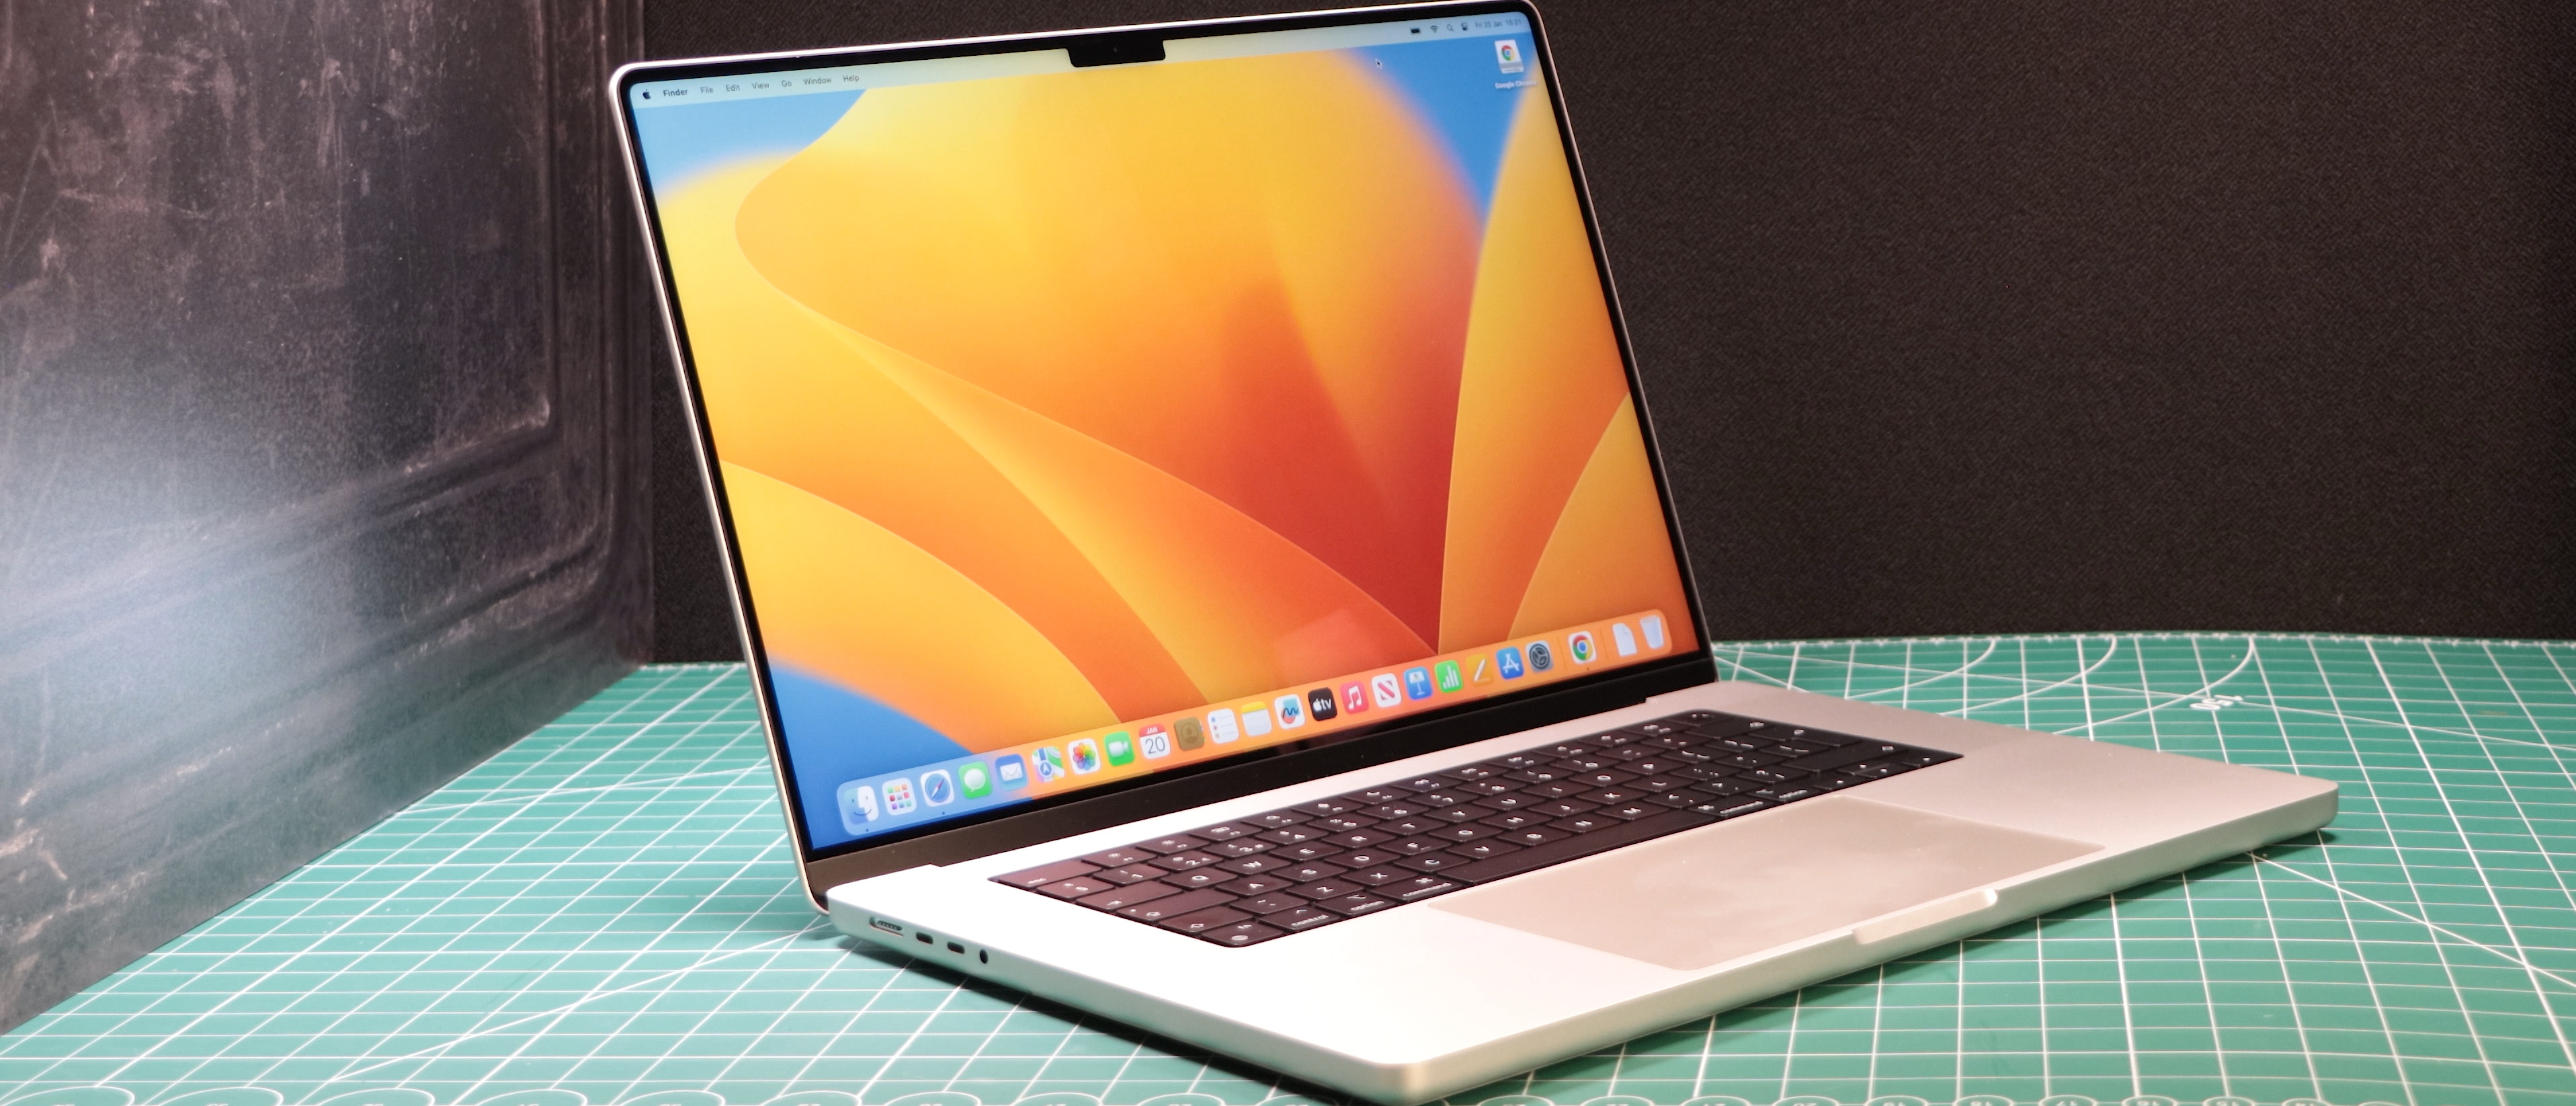 MacBook Pro 16 2021 VS MacBook Pro 16 2019 : le nouveau modèle est-il  vraiment meilleur ?